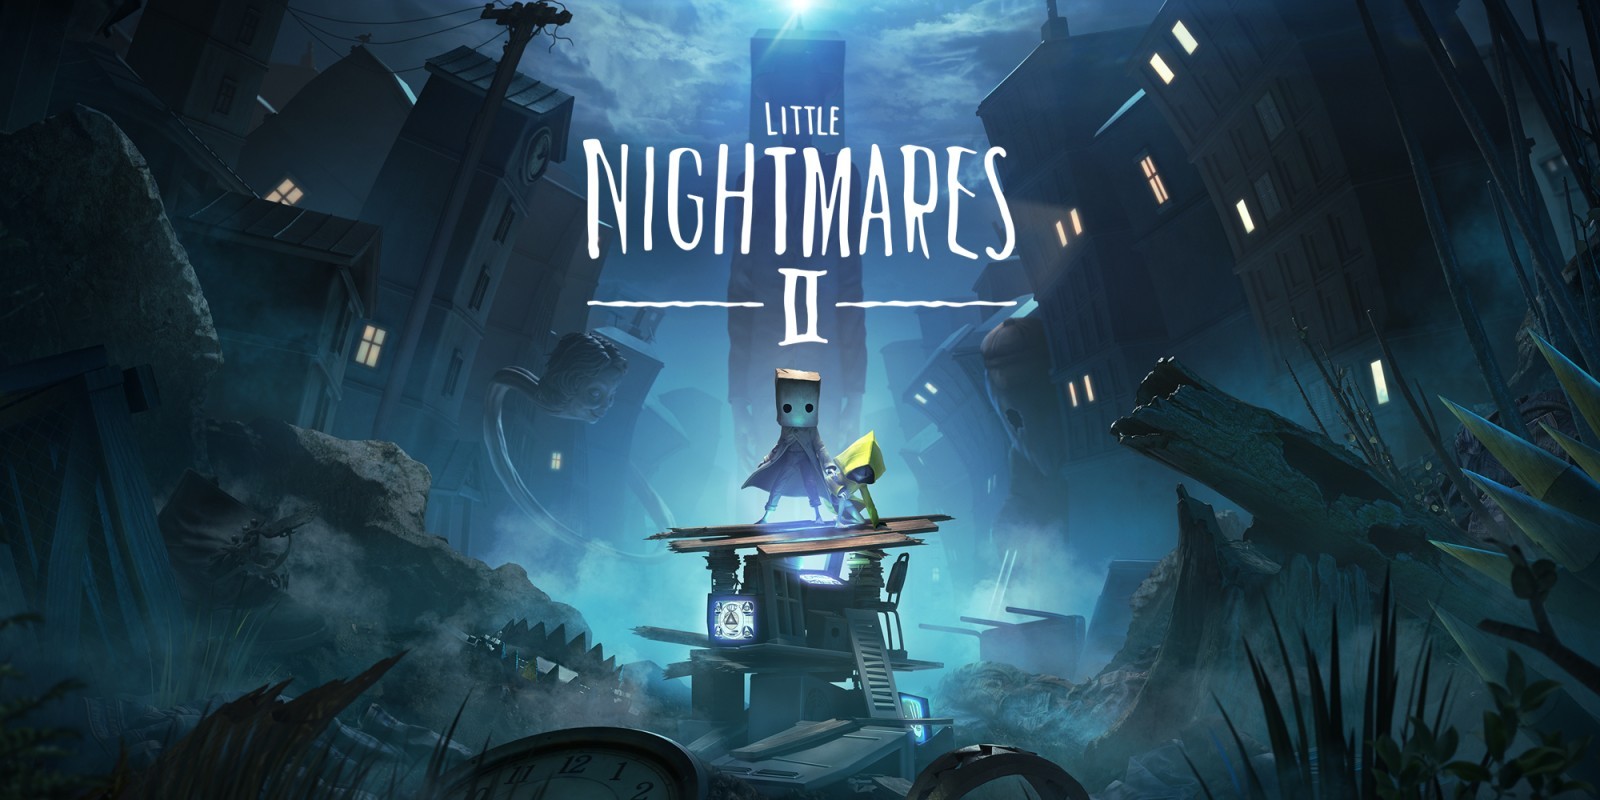 نقد و بررسی بازی Little Nightmares 2